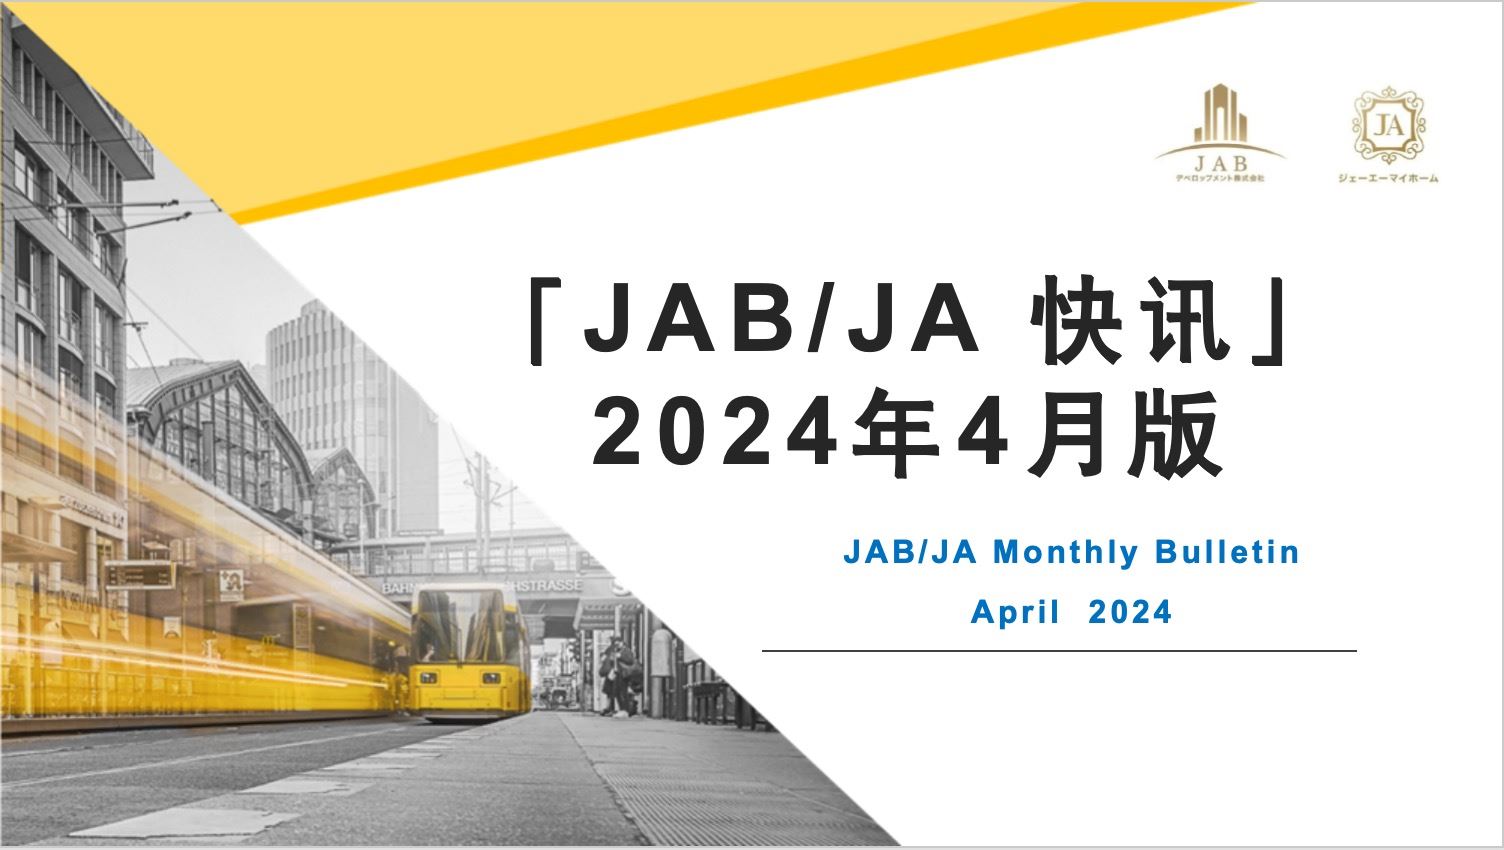 JAB/JA 2024年4月快讯